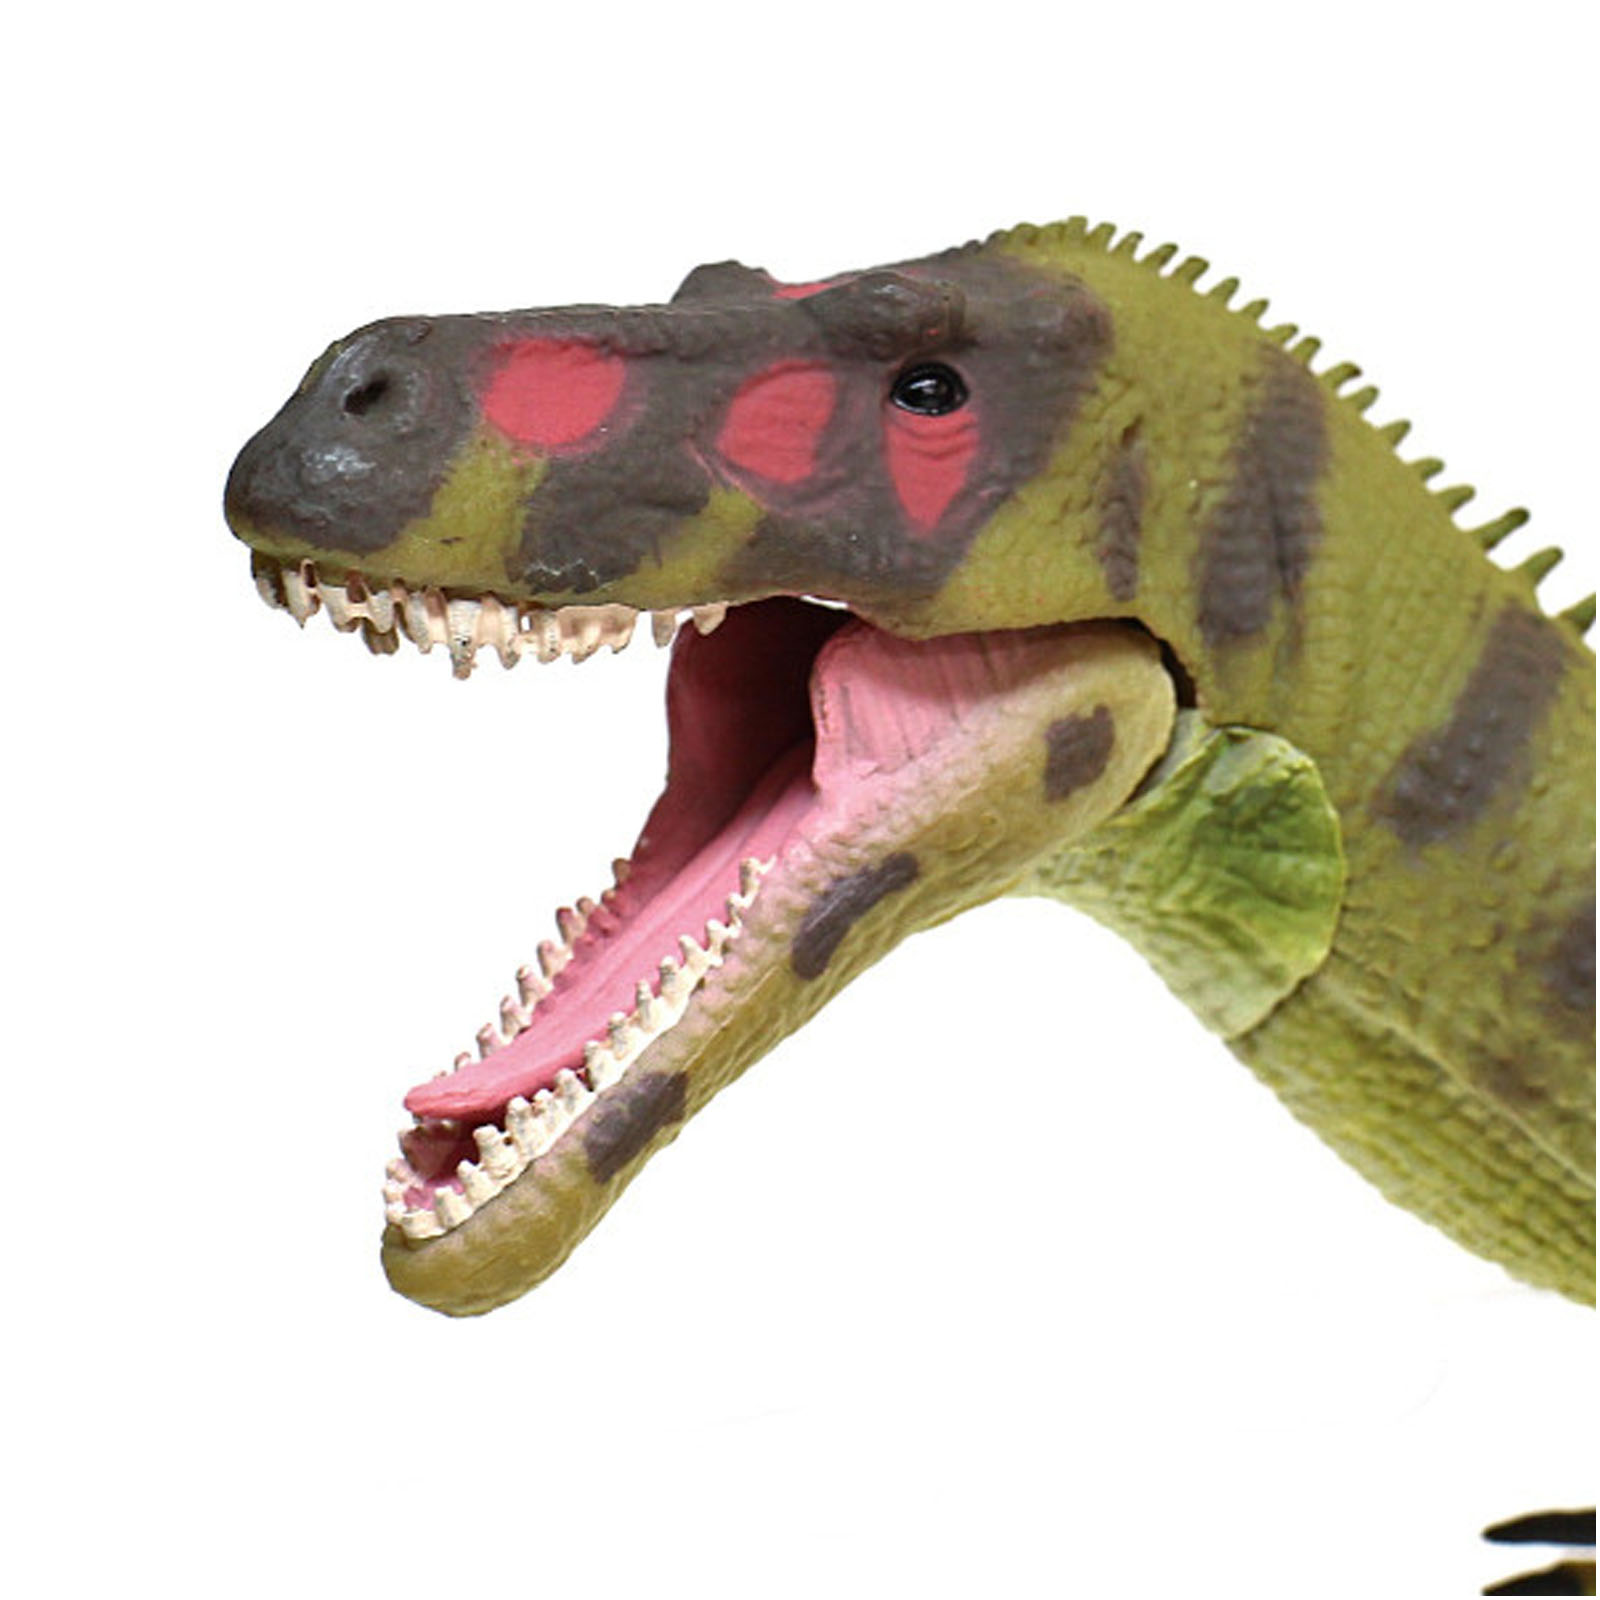 Фигурка Gulliver Collecta - Тираннозавр с подвижной челюстью  